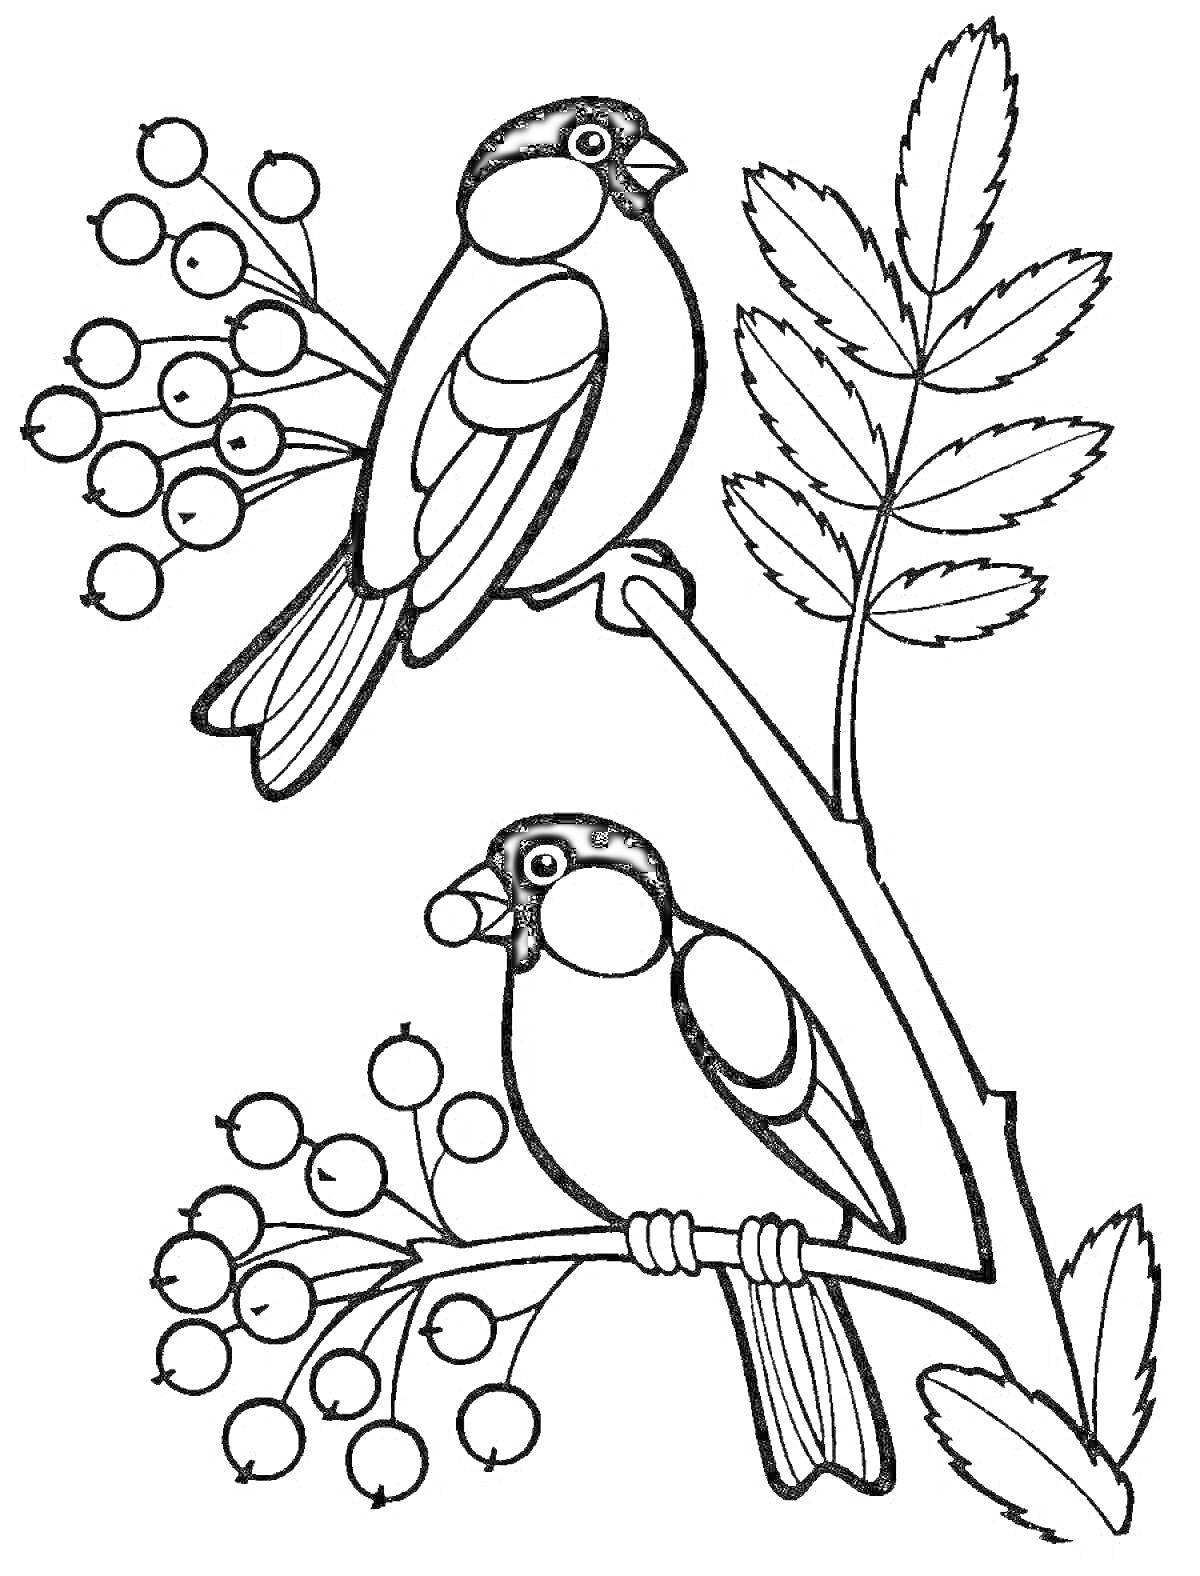 Раскраска Два снегиря на веточке с ягодами и листьями